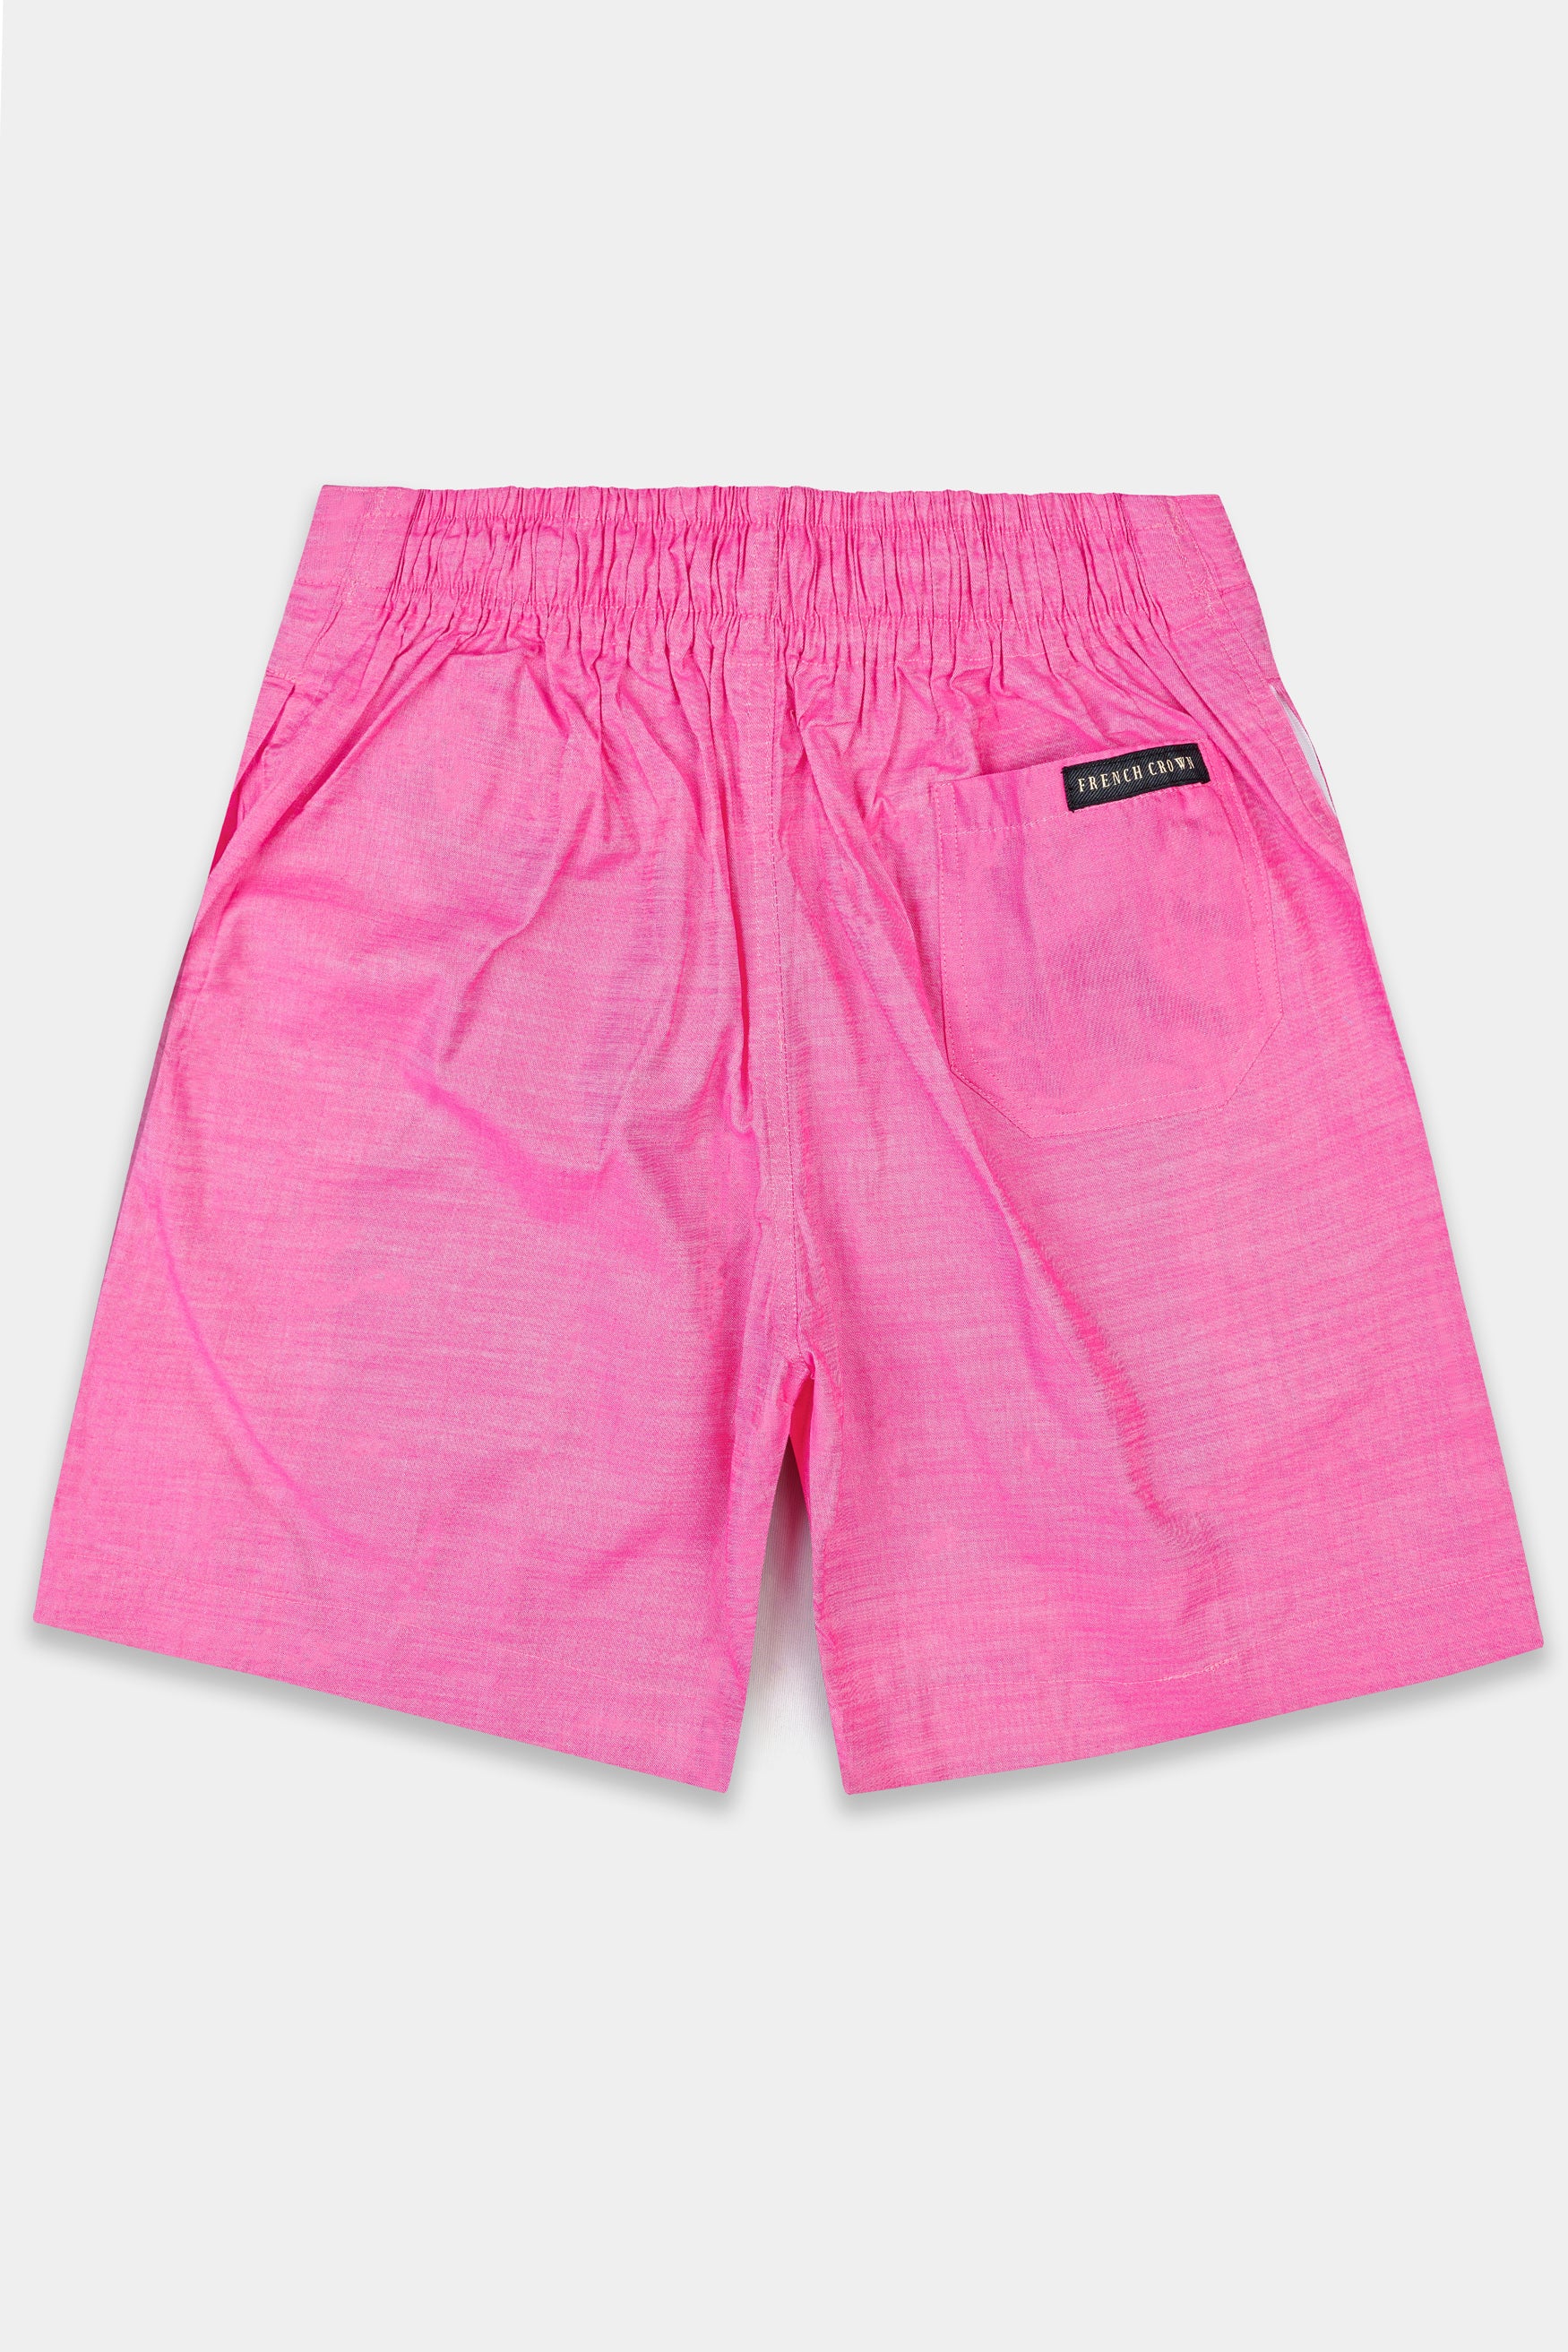 Taffy Pink Chambray Shorts SR344-28,  SR344-30,  SR344-32,  SR344-34,  SR344-36,  SR344-38,  SR344-40,  SR344-42,  SR344-44